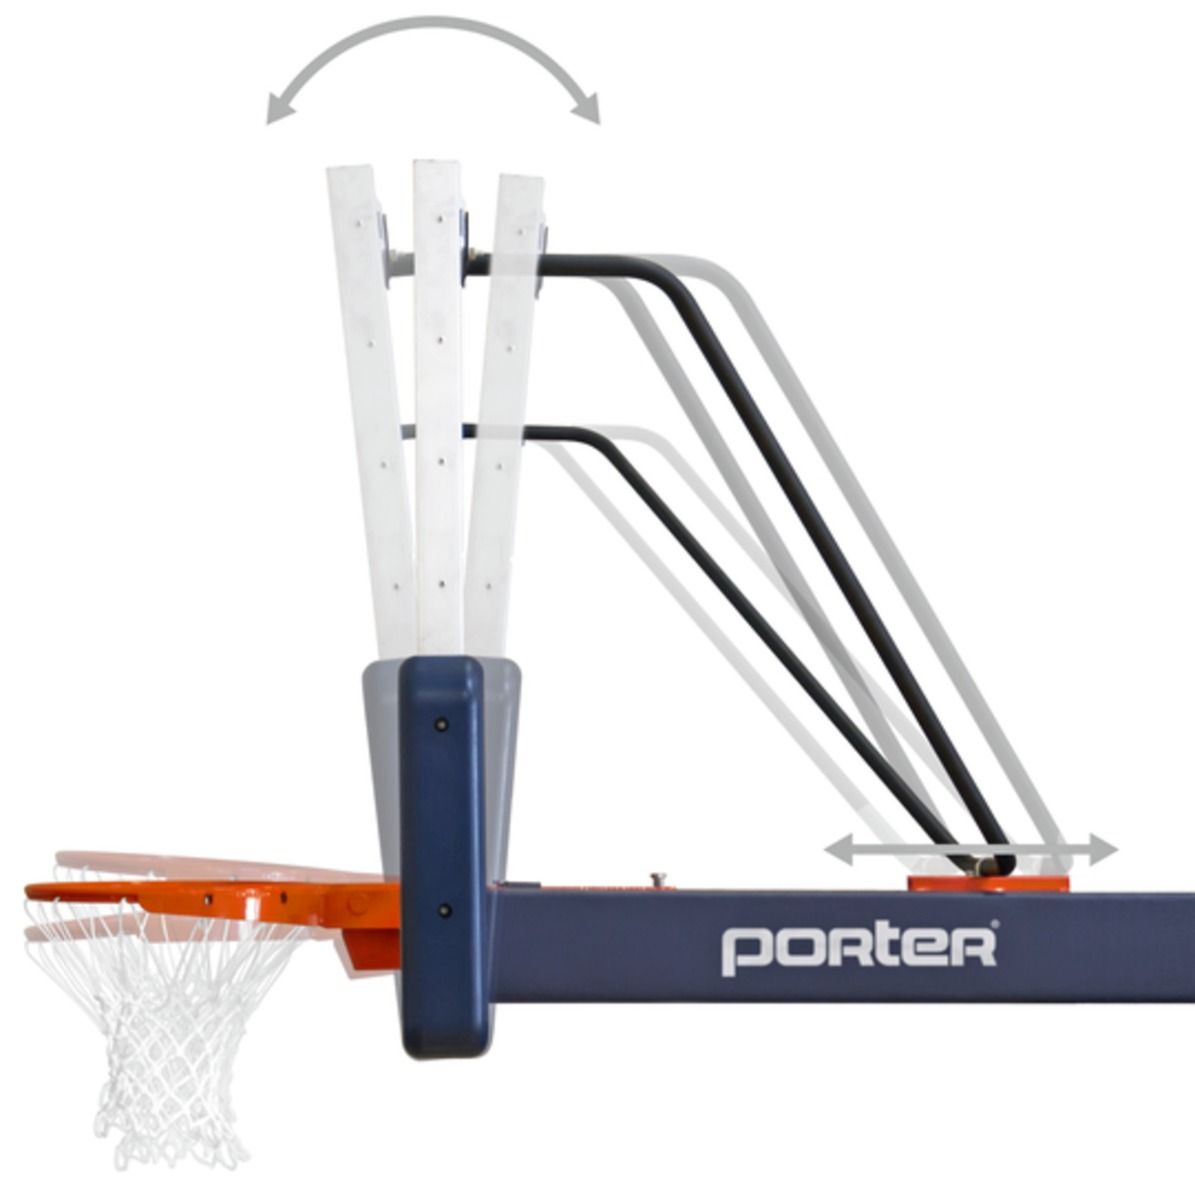 Porter Arena Level Portable Basketball Goal